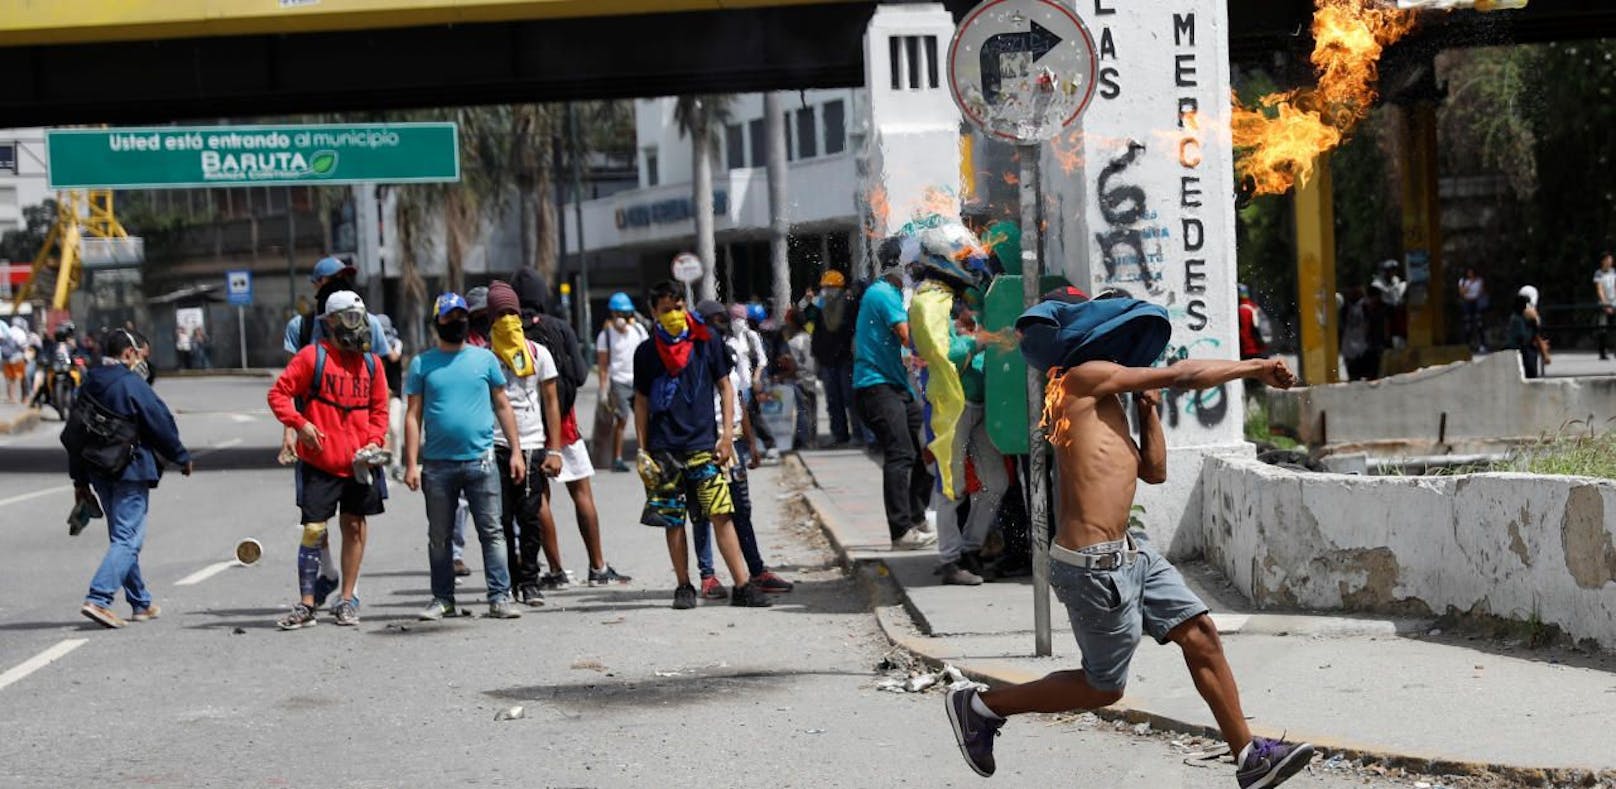 16-Jähriger bei Protesten in Venezuela erschossen